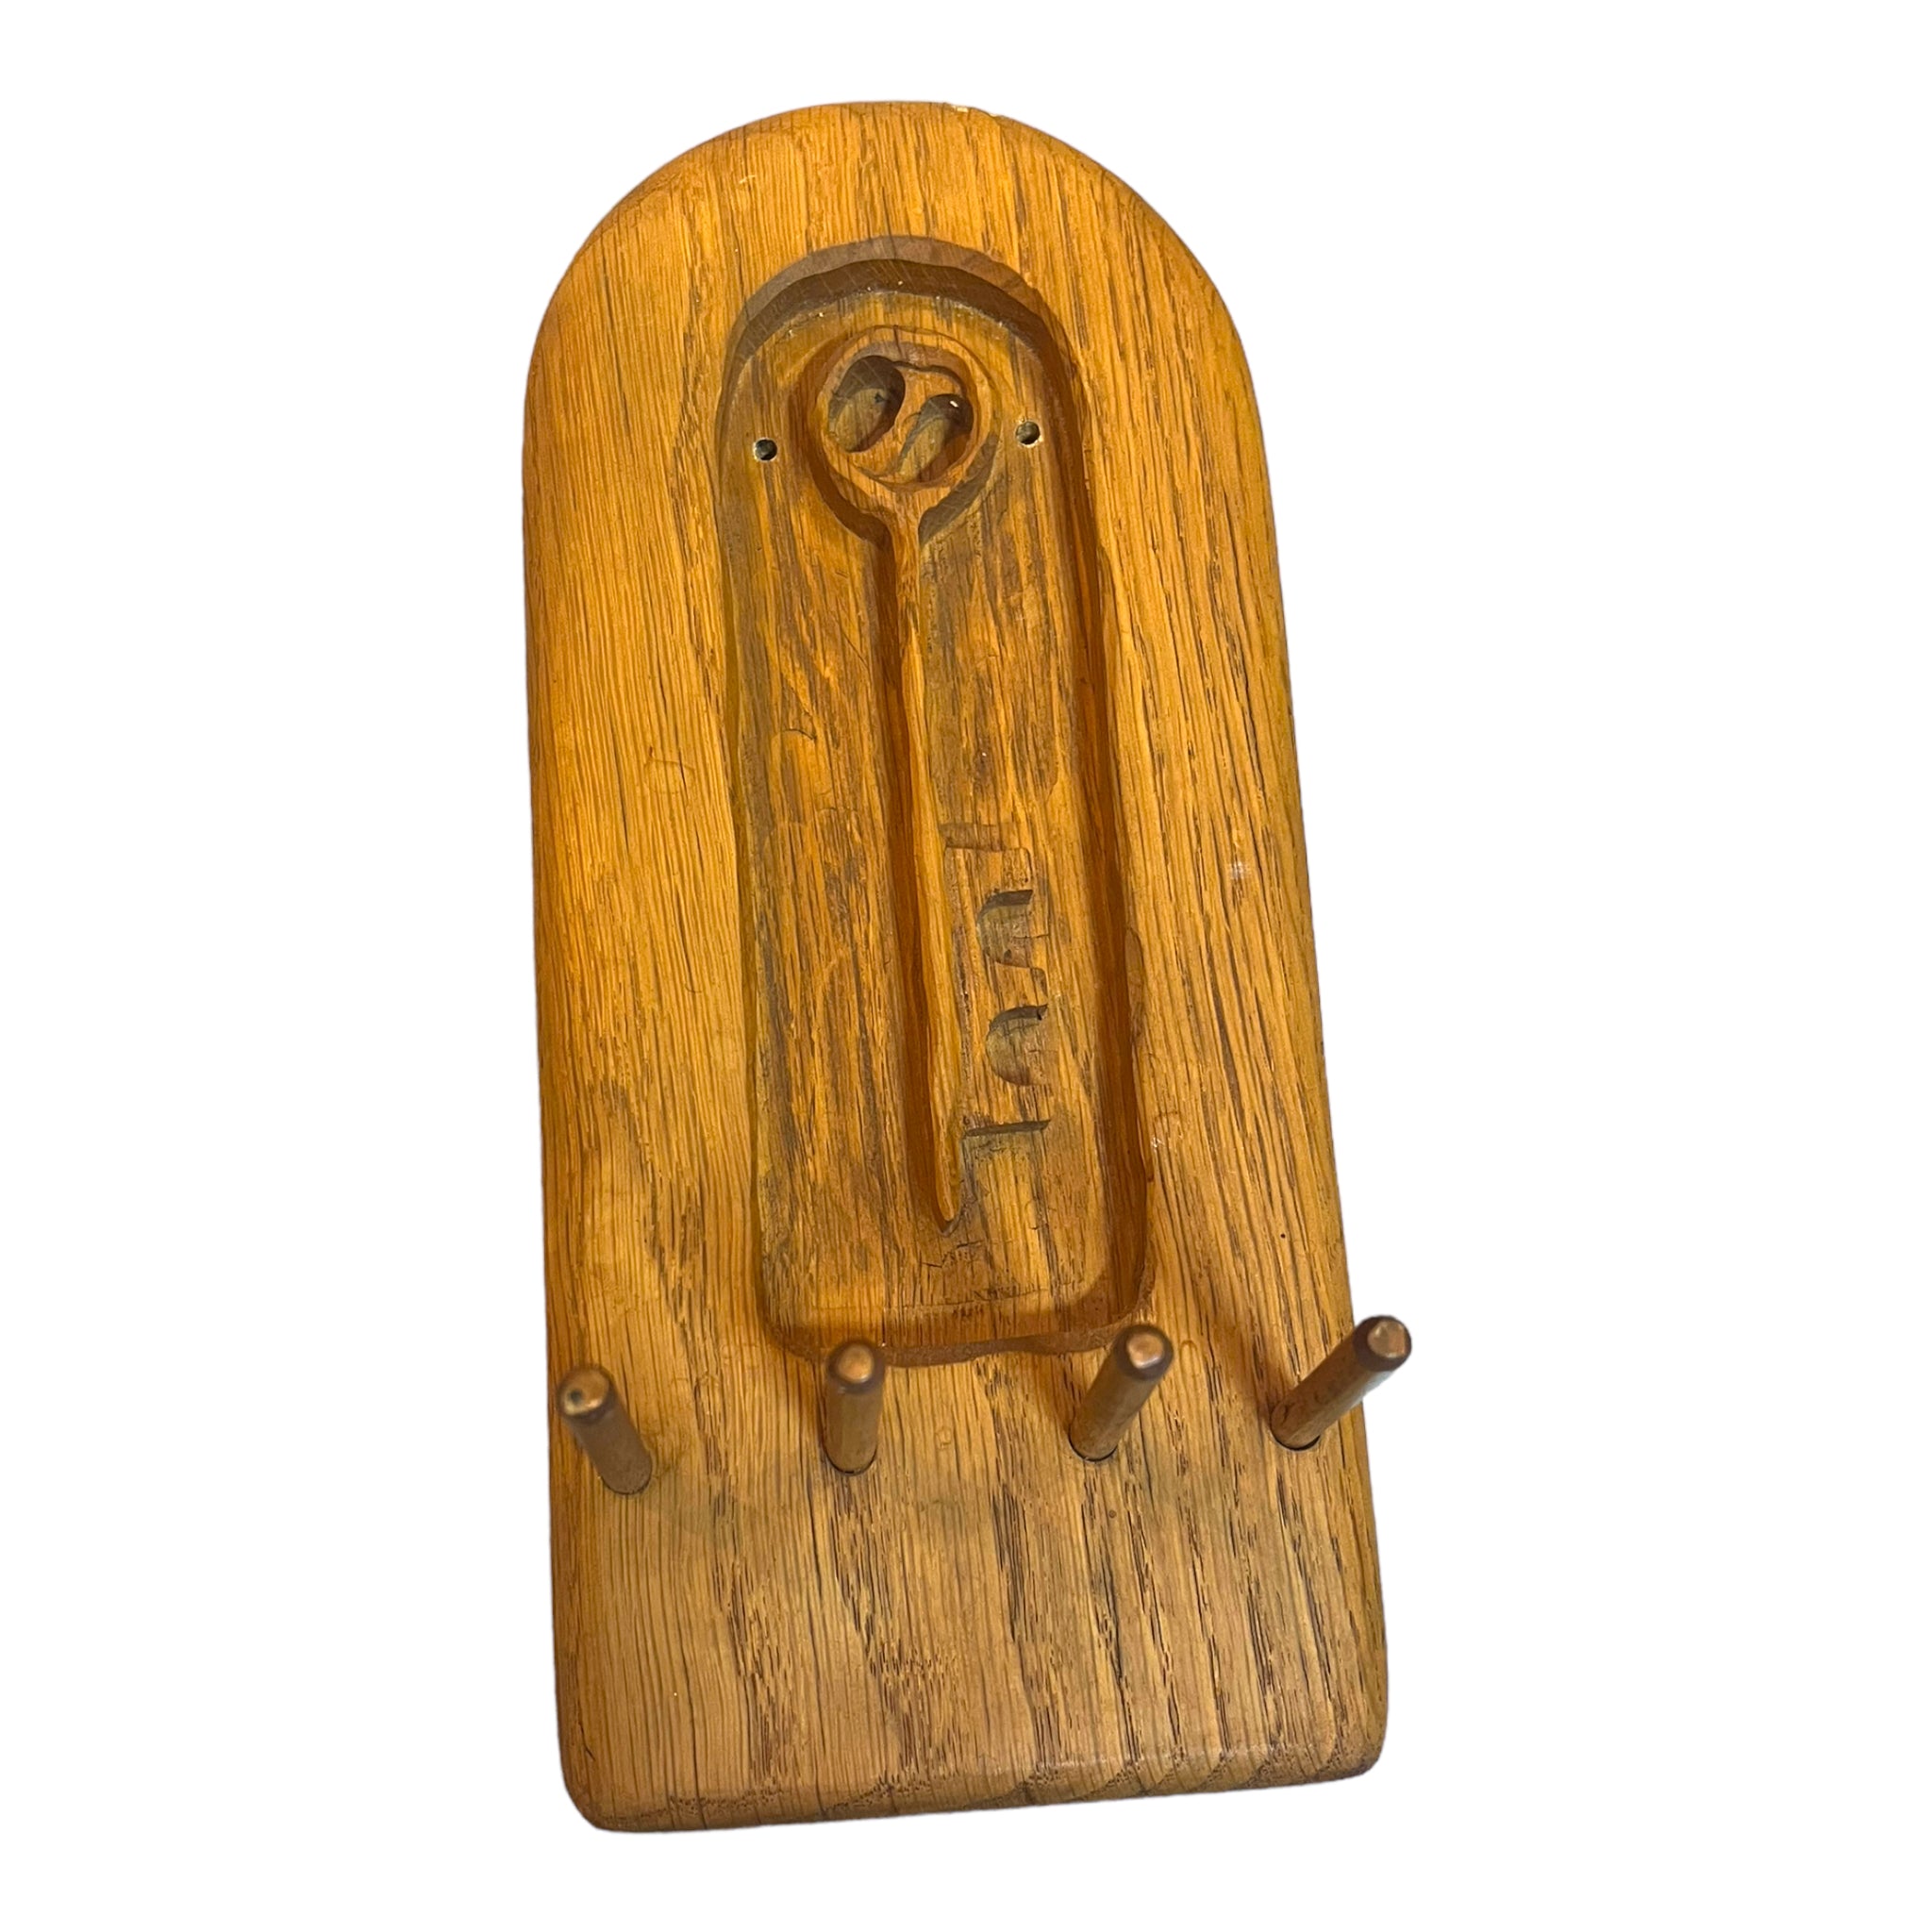 Hand Carved Wooden Key Holder